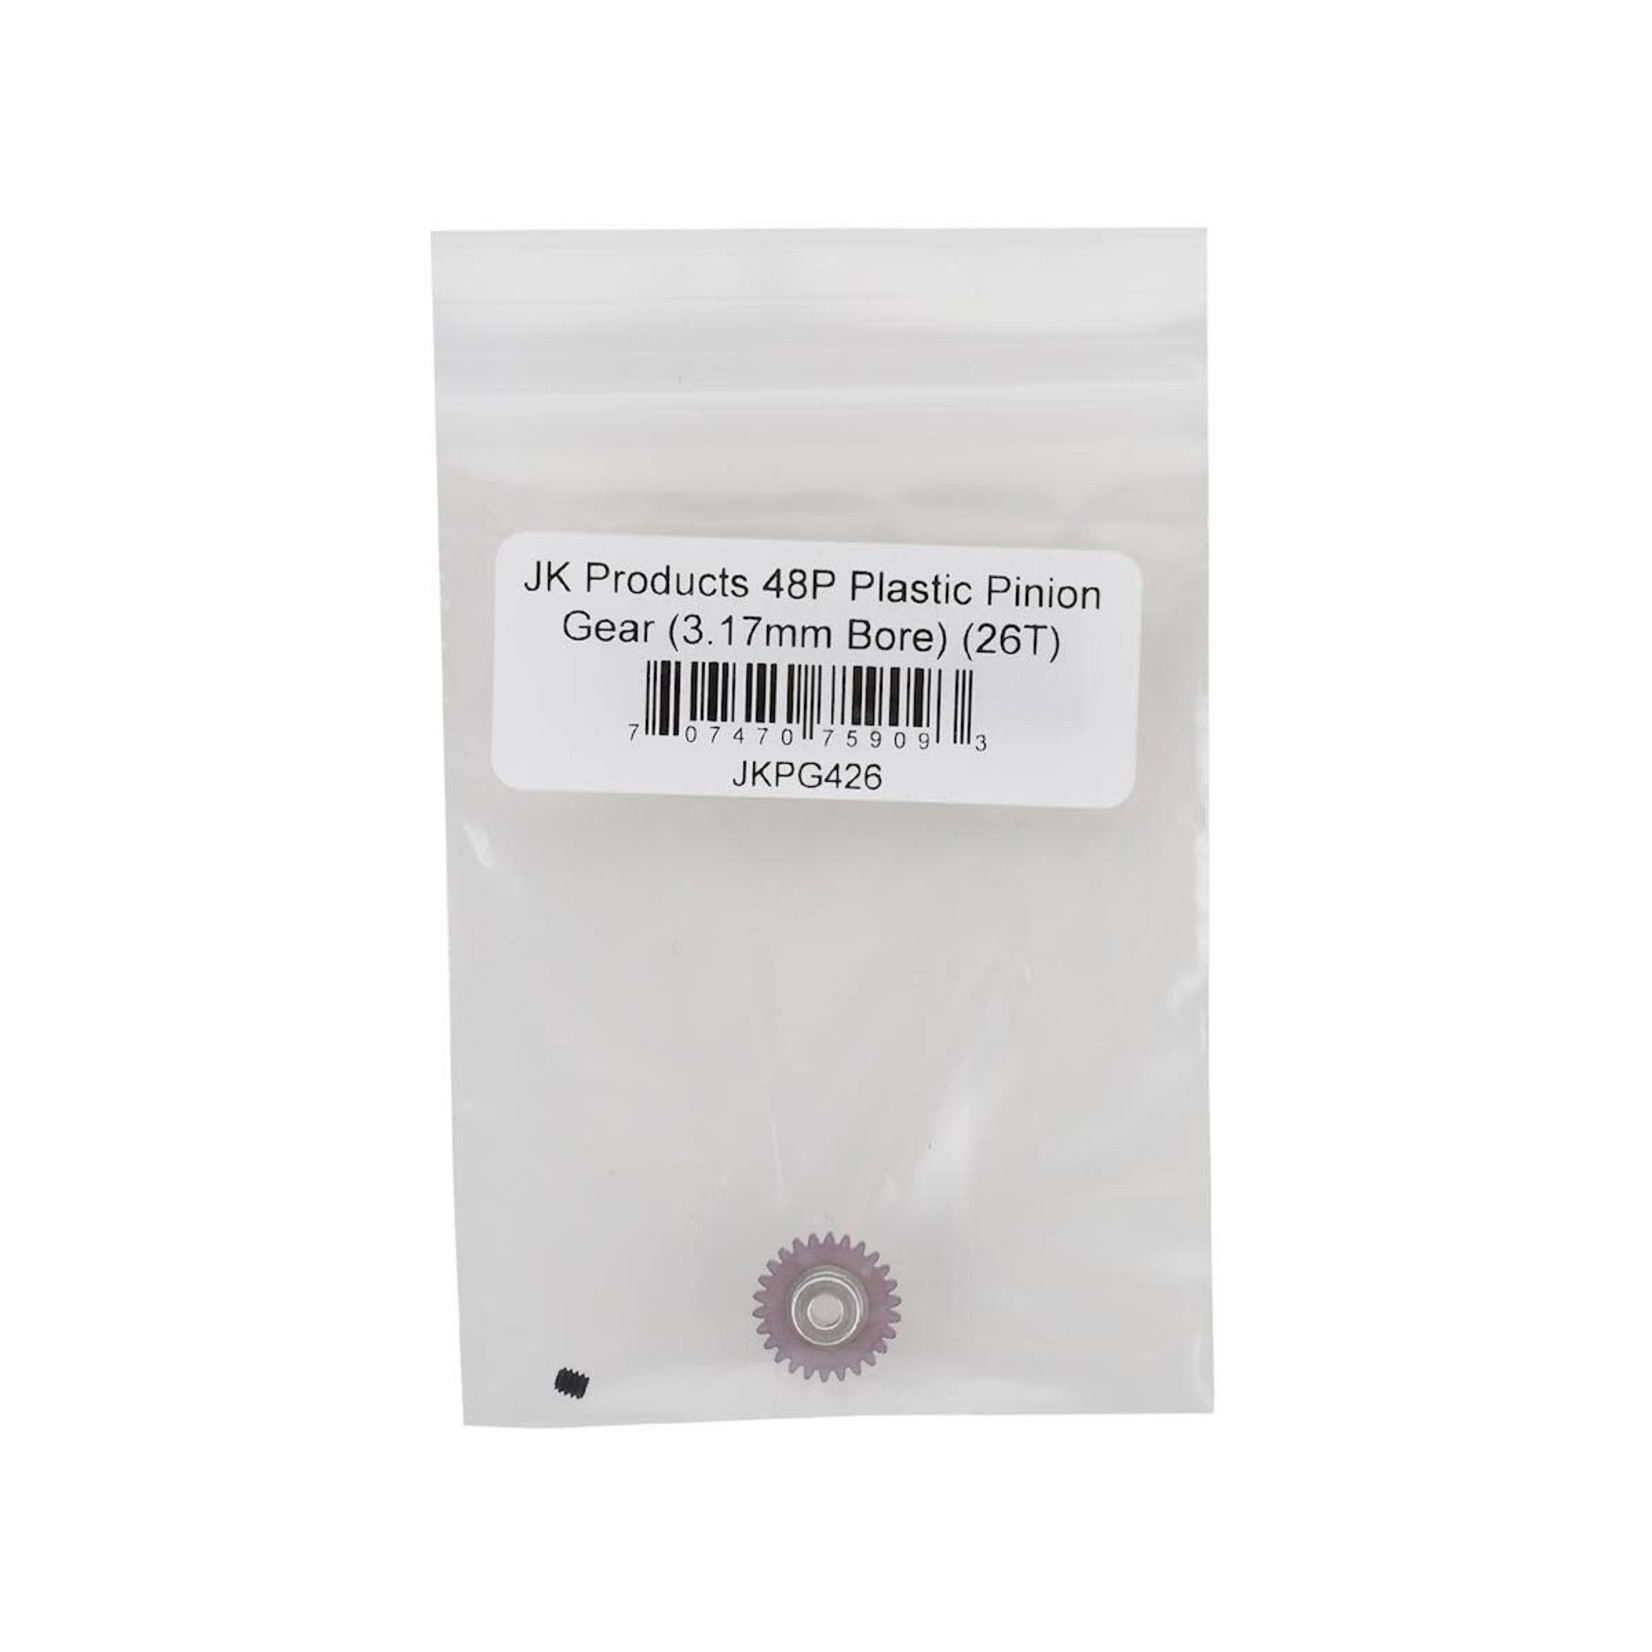 JK Products JK Products 48P Plastic Pinion Gear (3.17mm Bore) (26T) #JKPG426